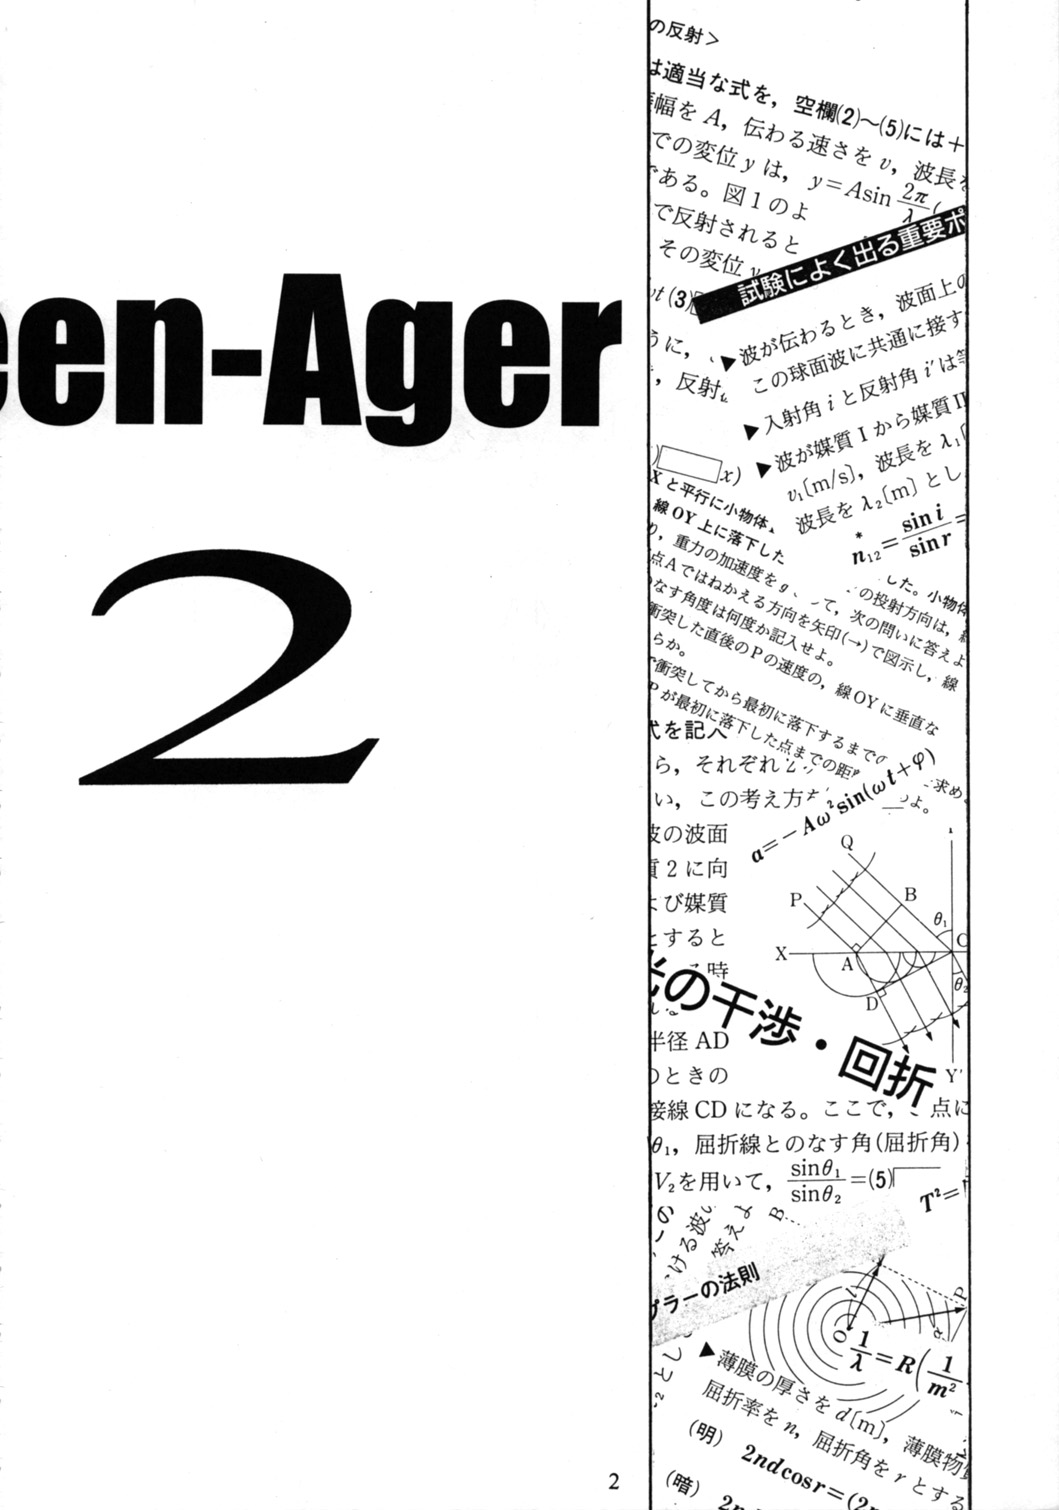 [６６の丘(６６－夢王)] Teen-Ager 2 